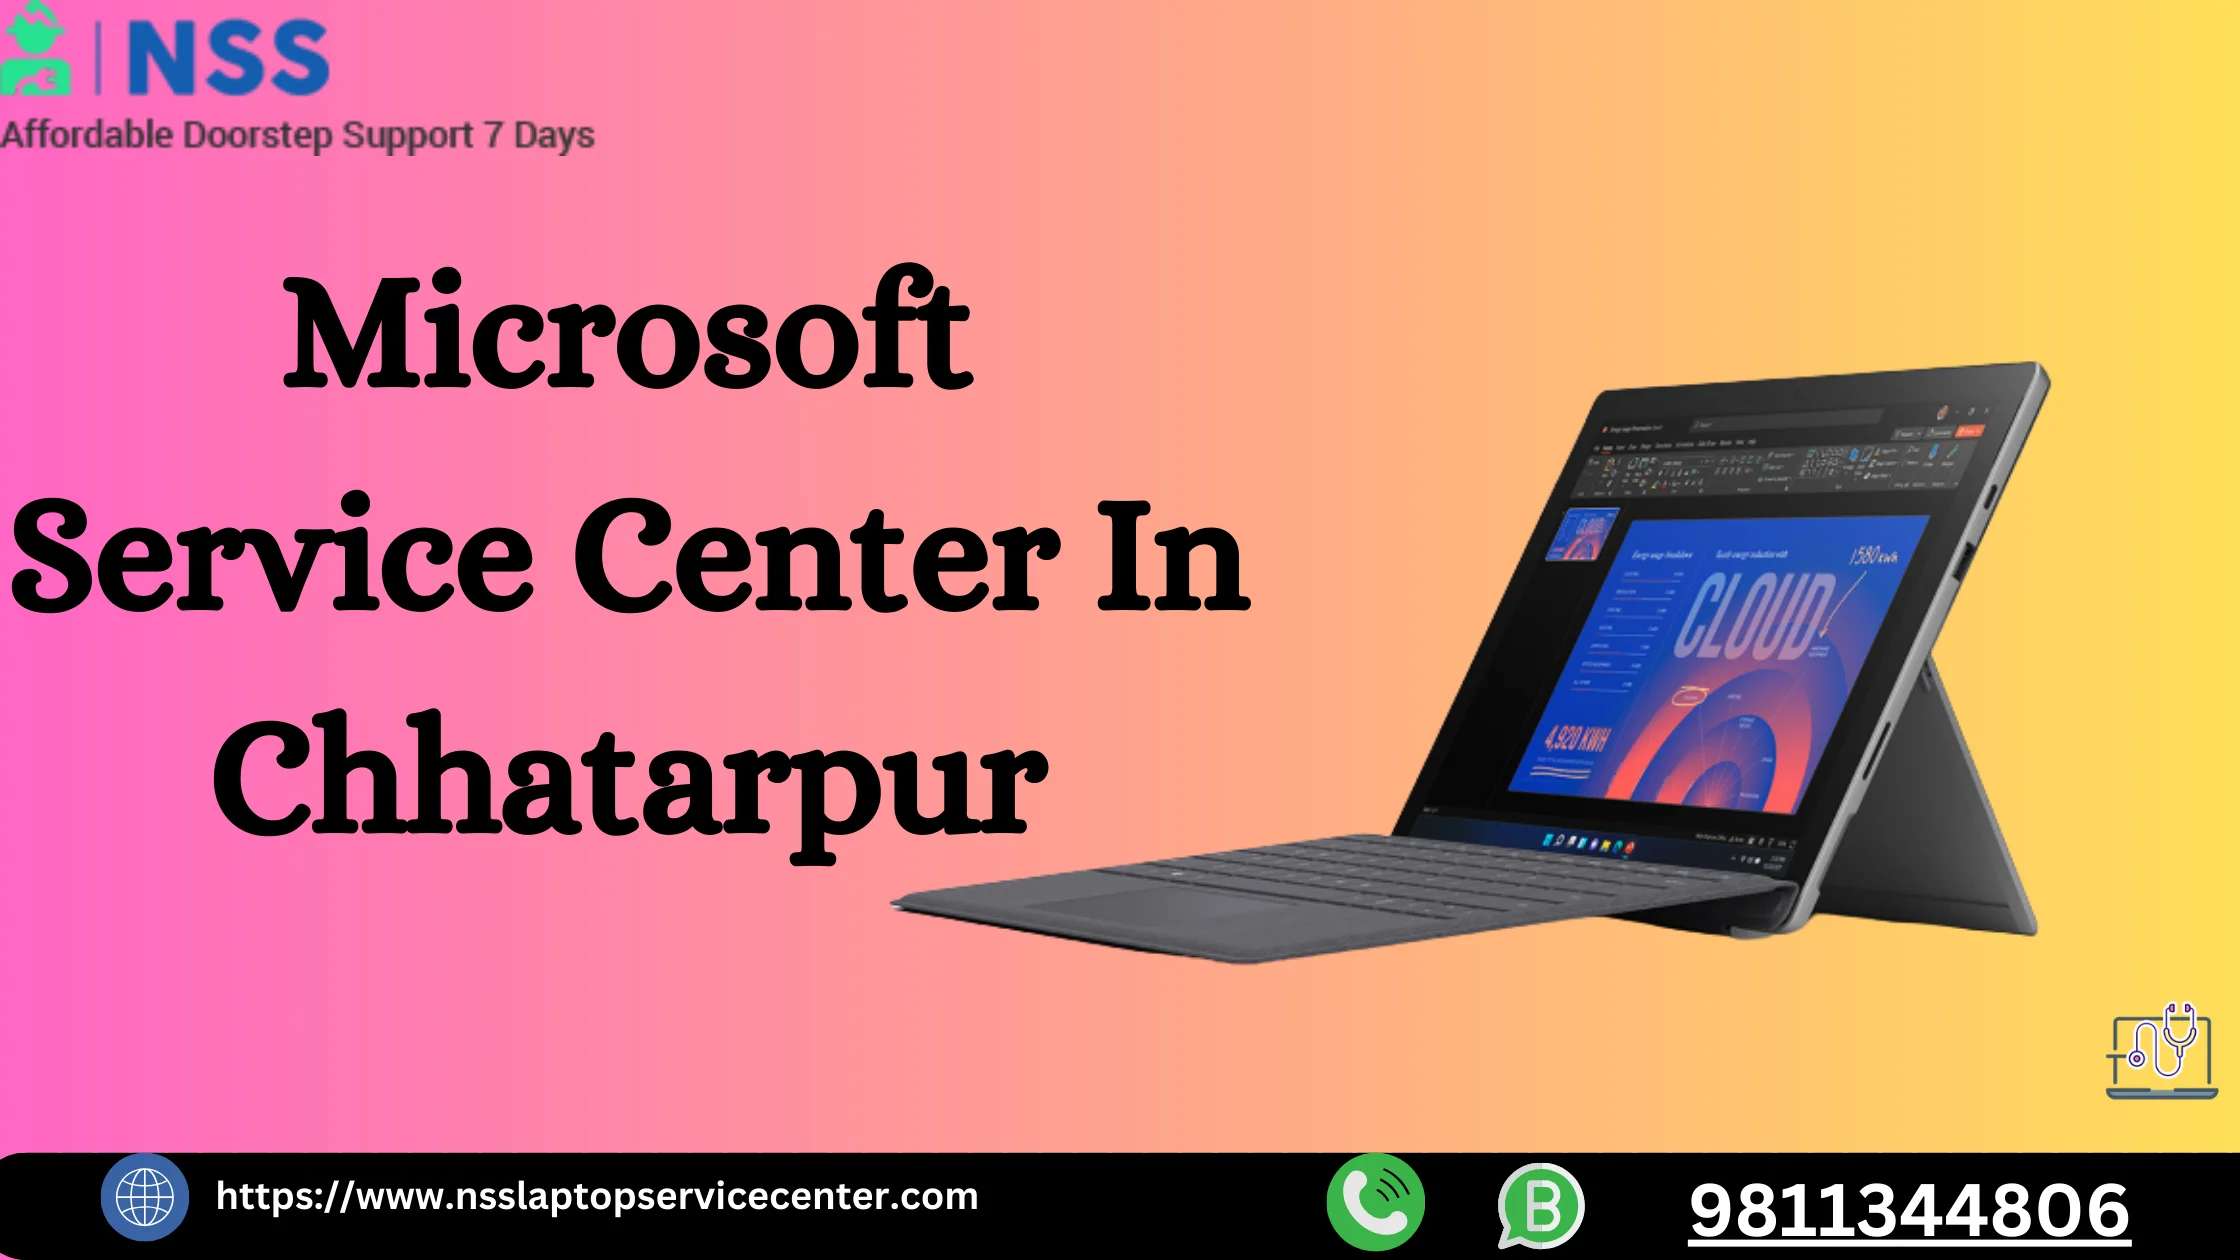 Microsoft Service Center In Chhatarpur Delhi